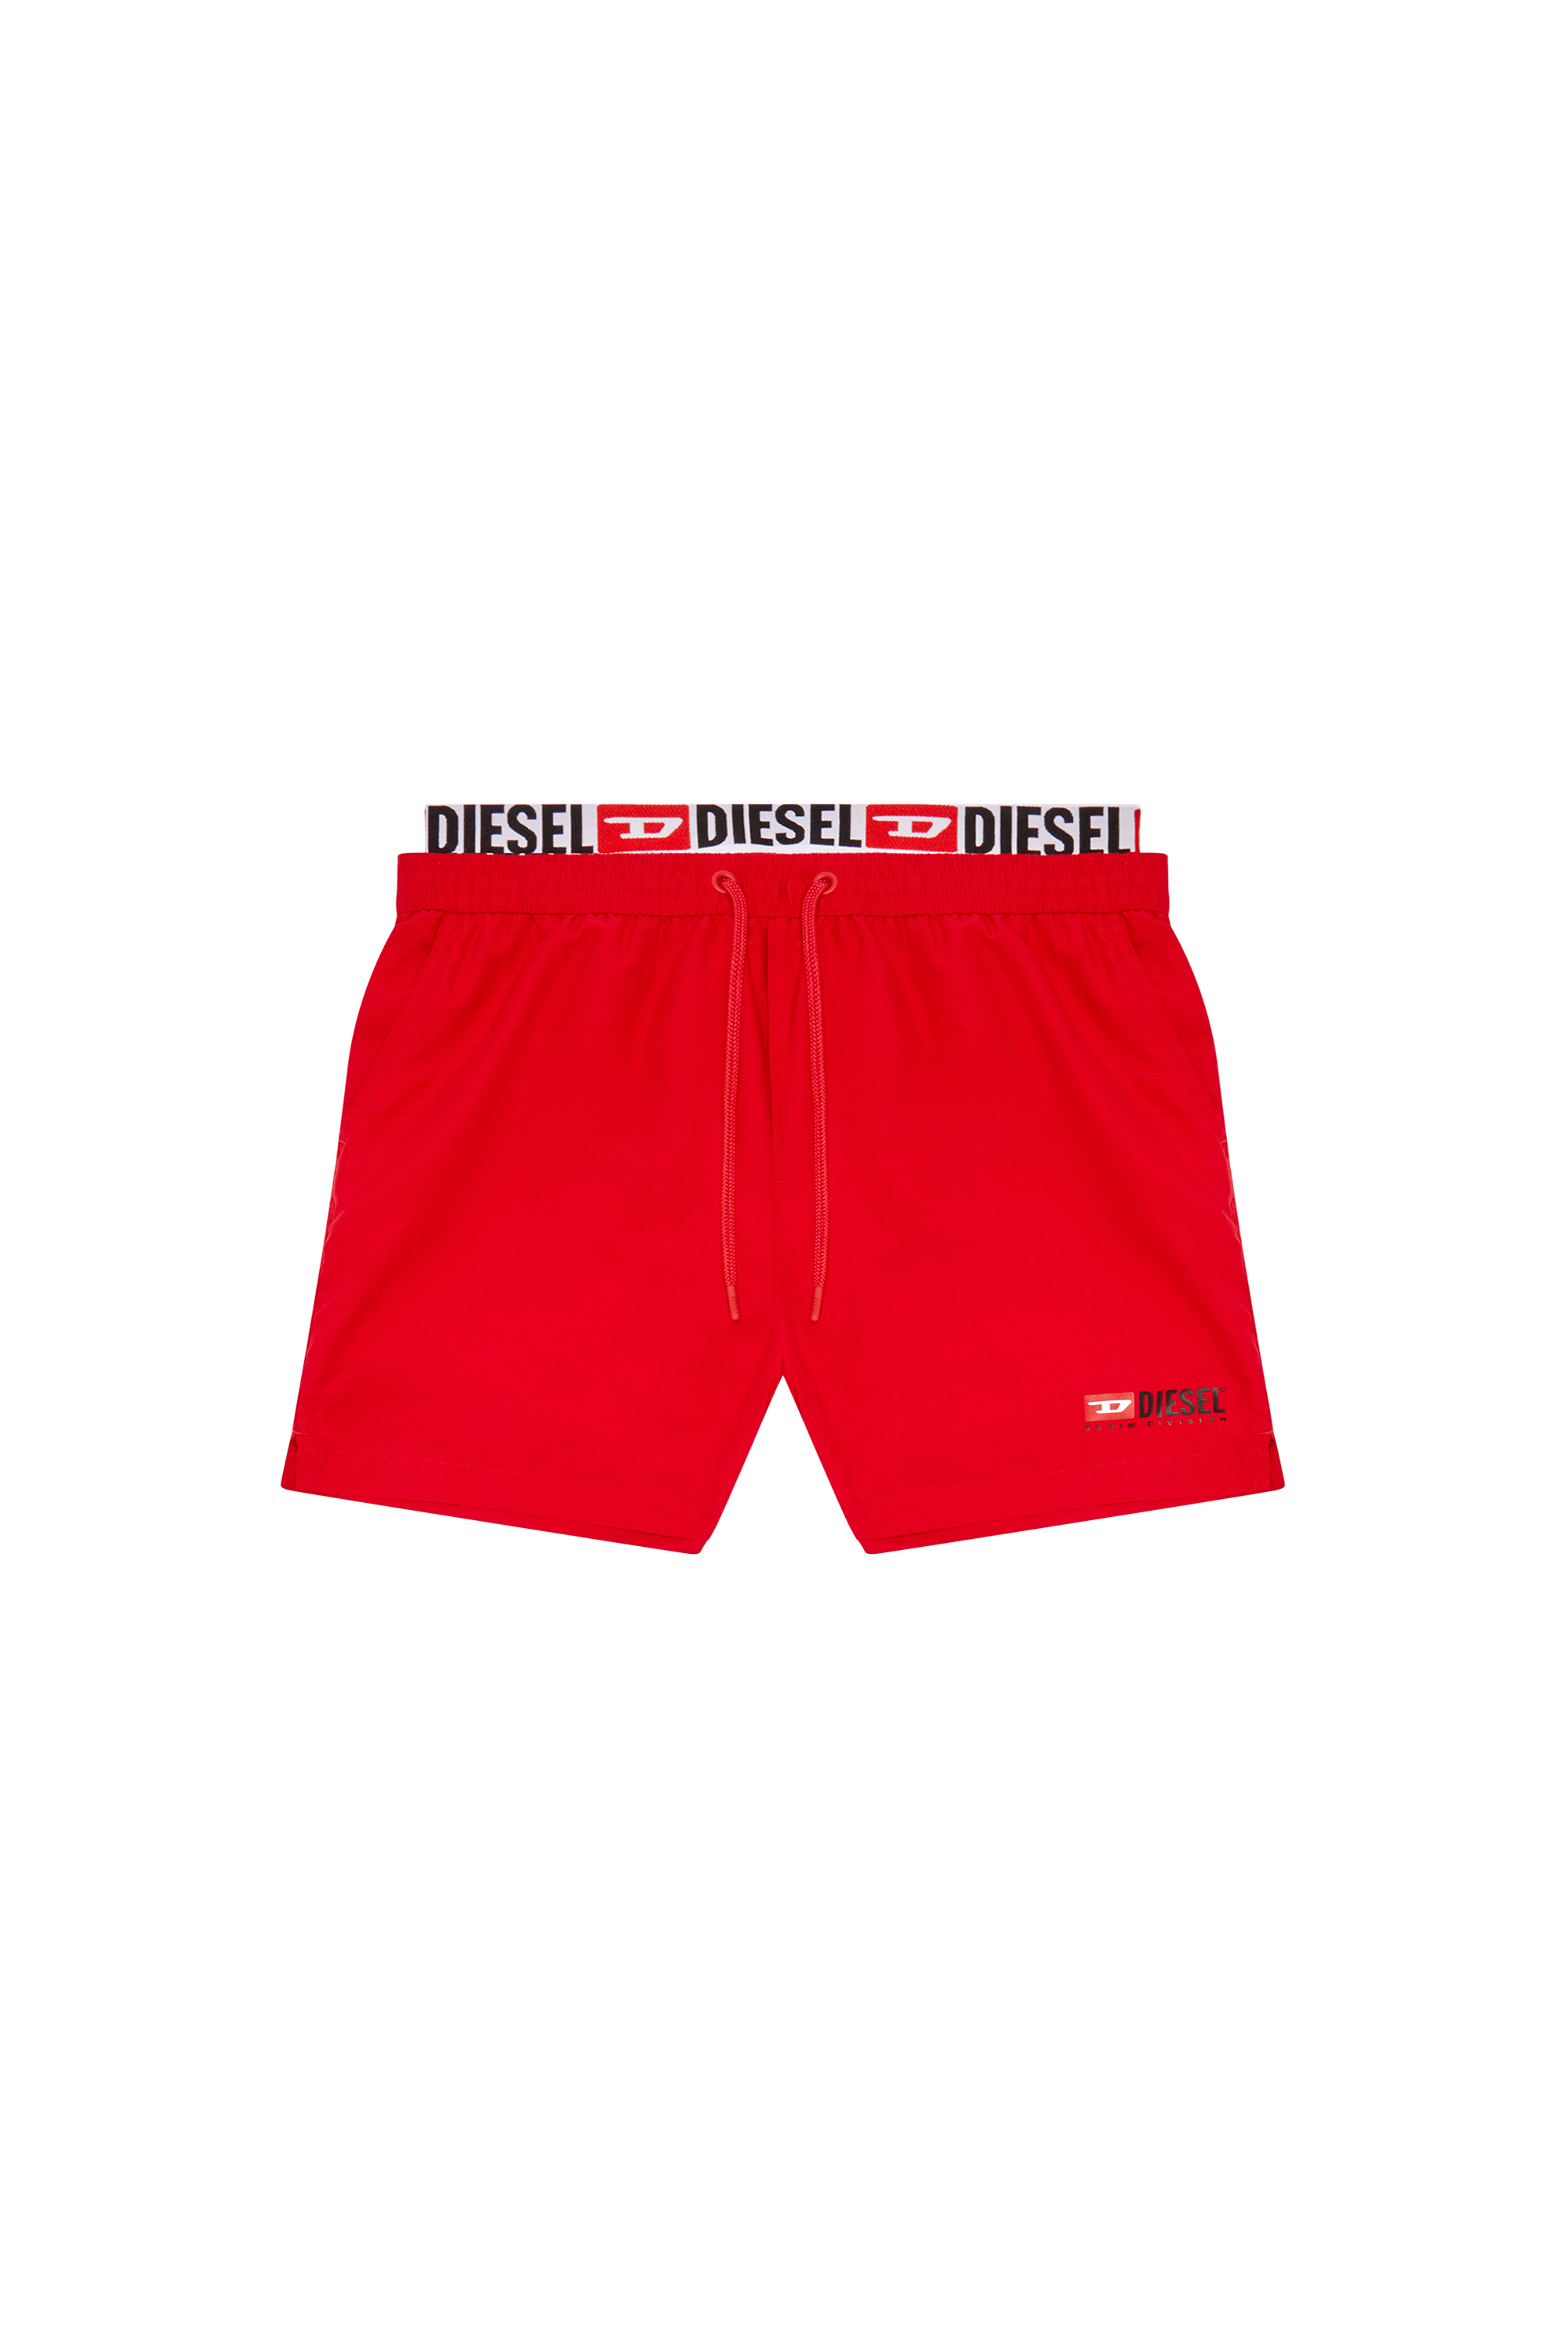 Diesel - BMBX-VISPER-41, Man Double-waist board shorts in Red - Image 4